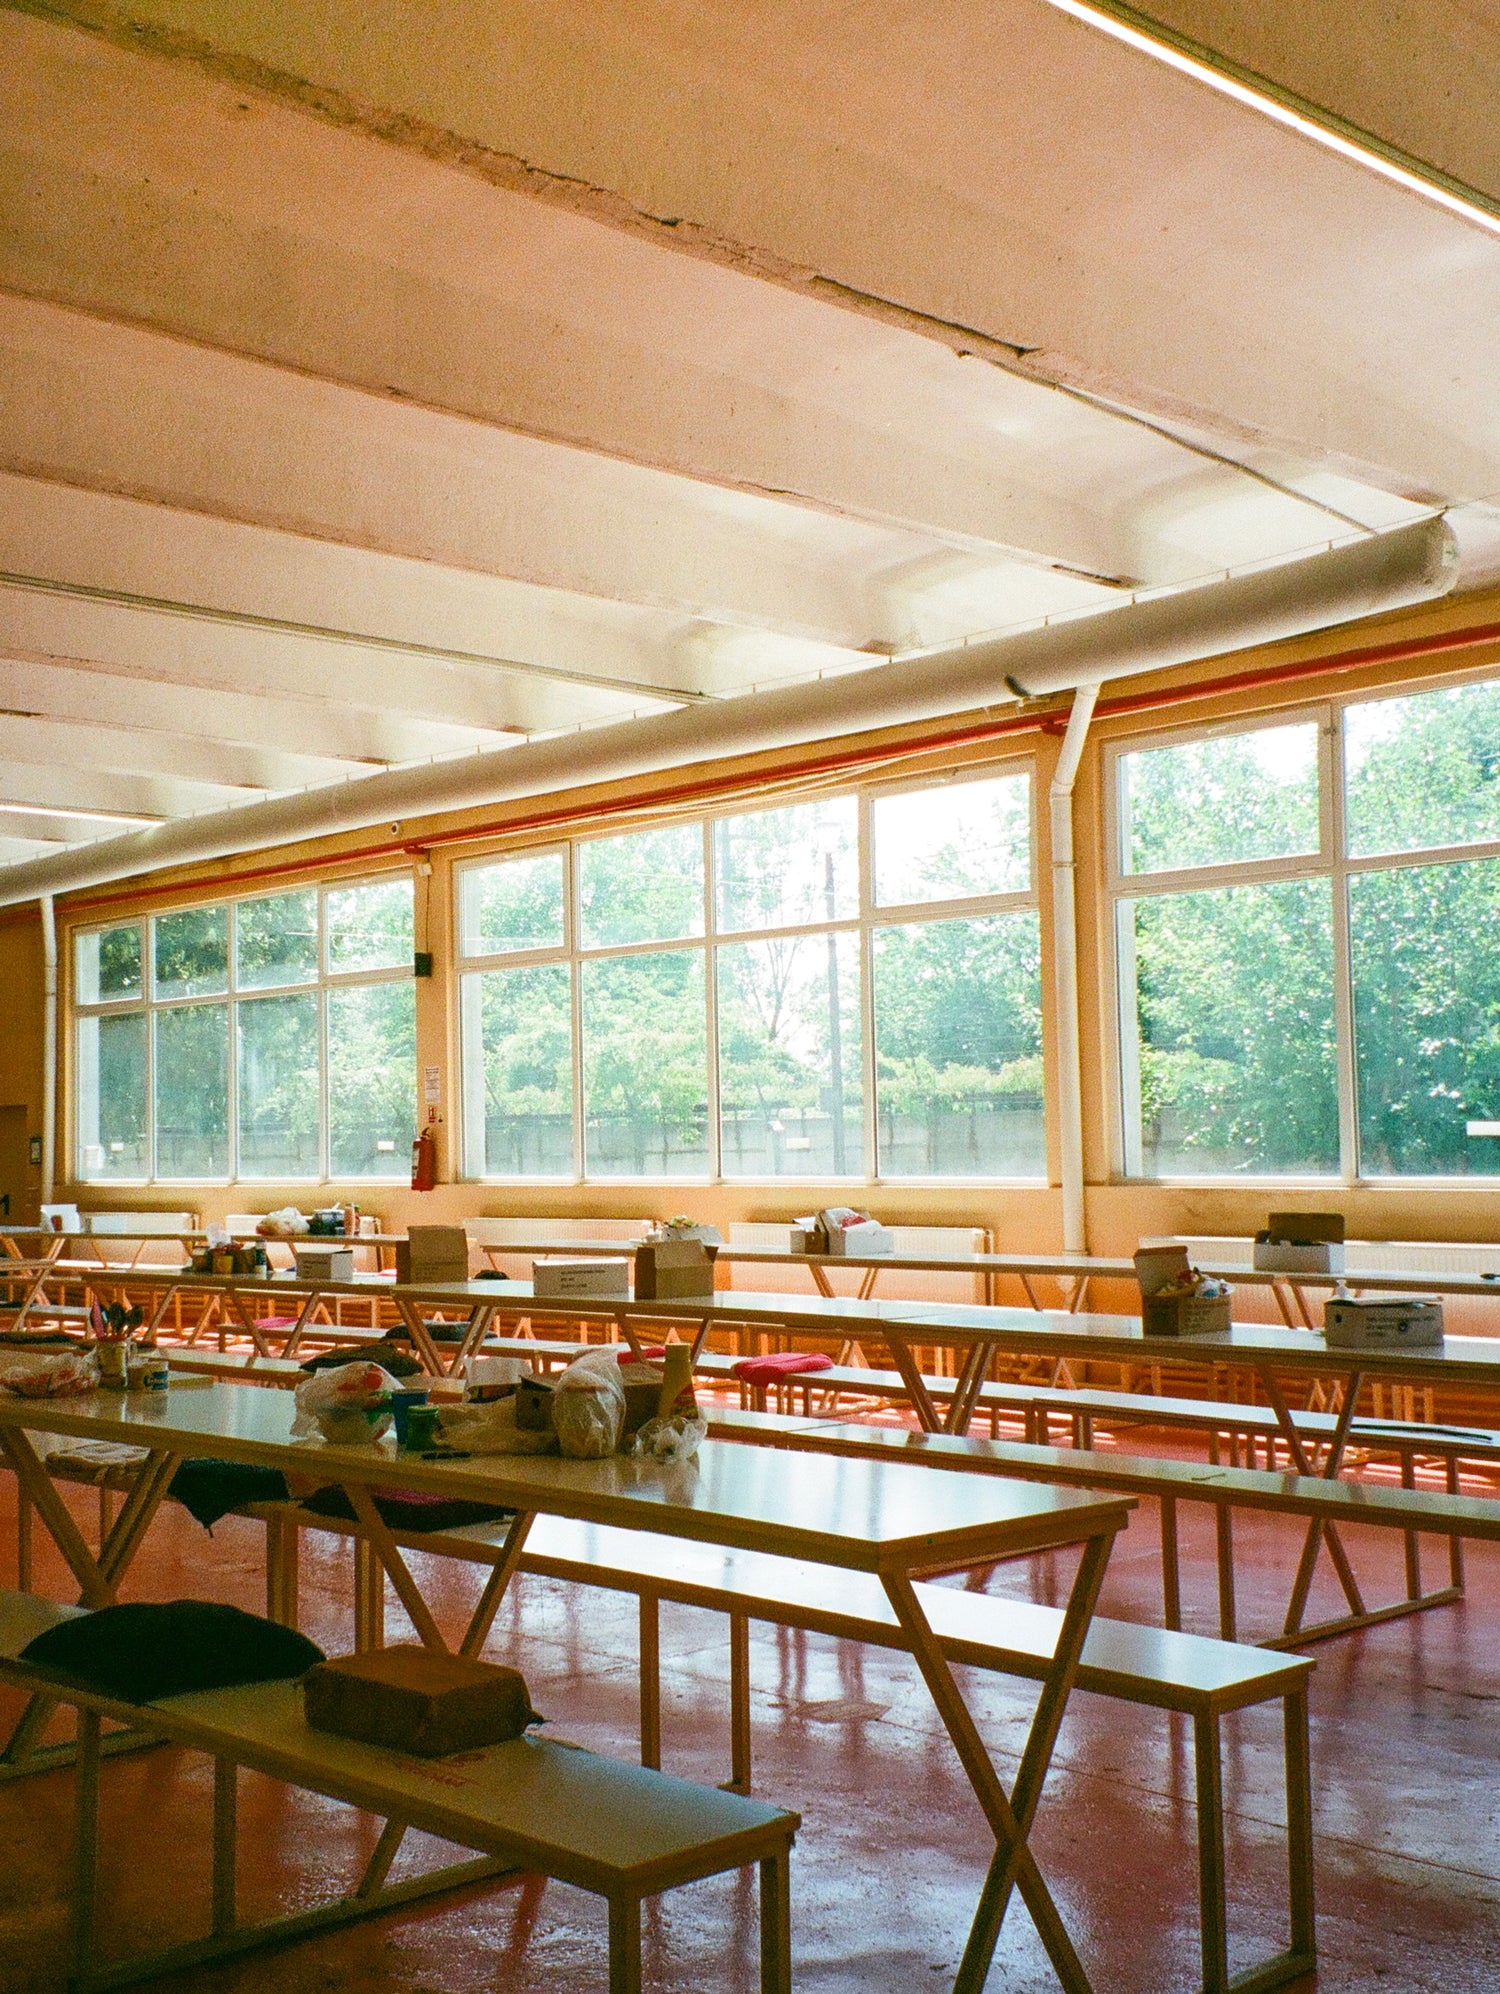 salle de travail d'une usine de tissu en Roumanie orange avec une fenêtre donnant une sur foret verdoyante